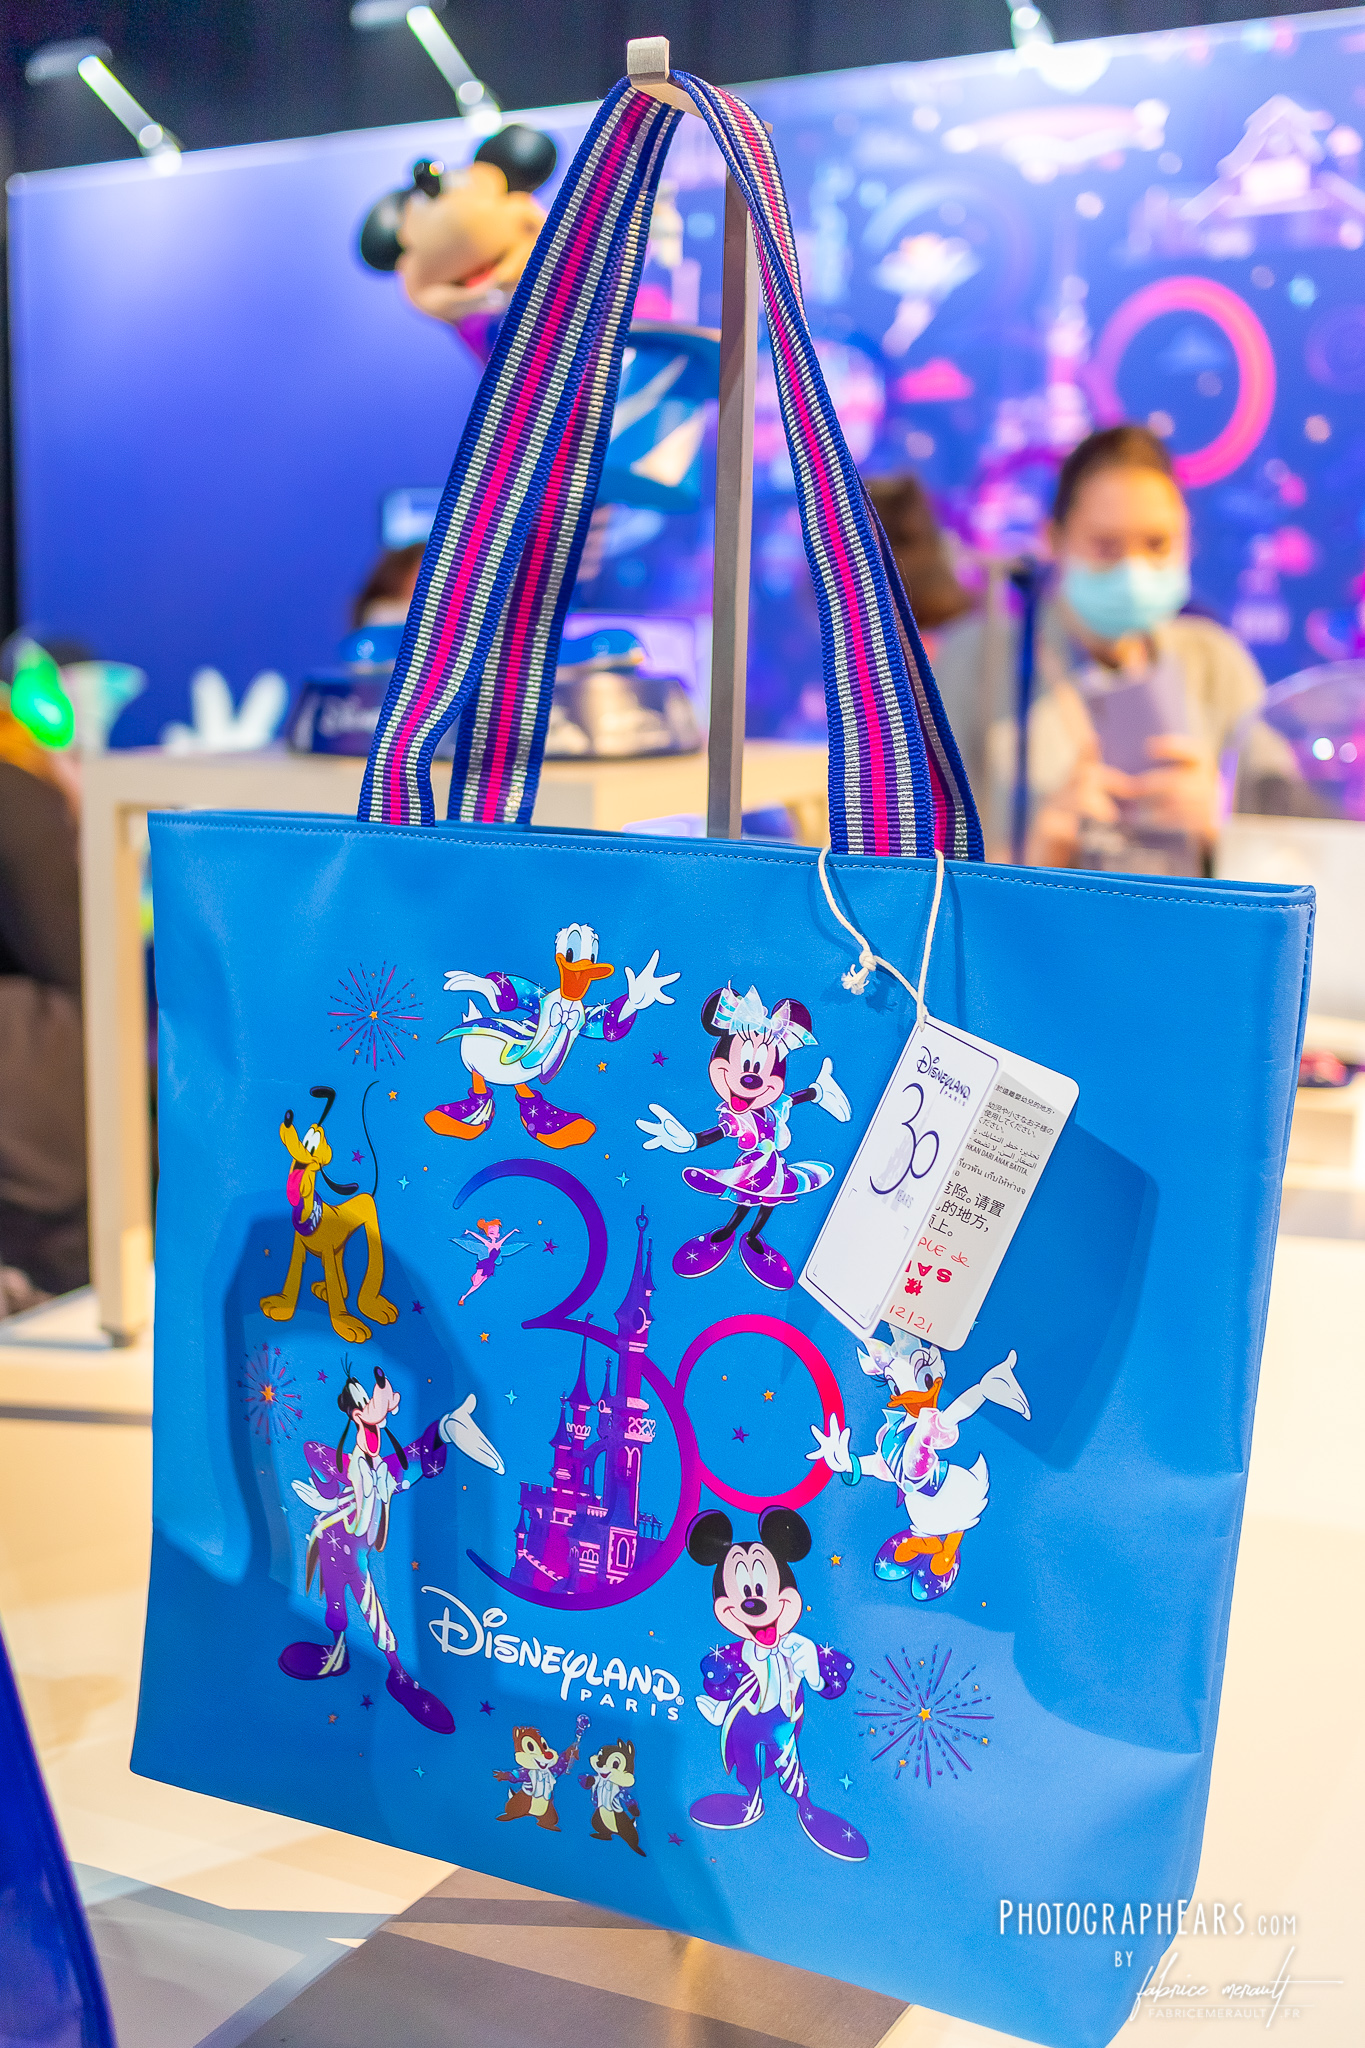 Le sac 30 ans de Disneyland Paris